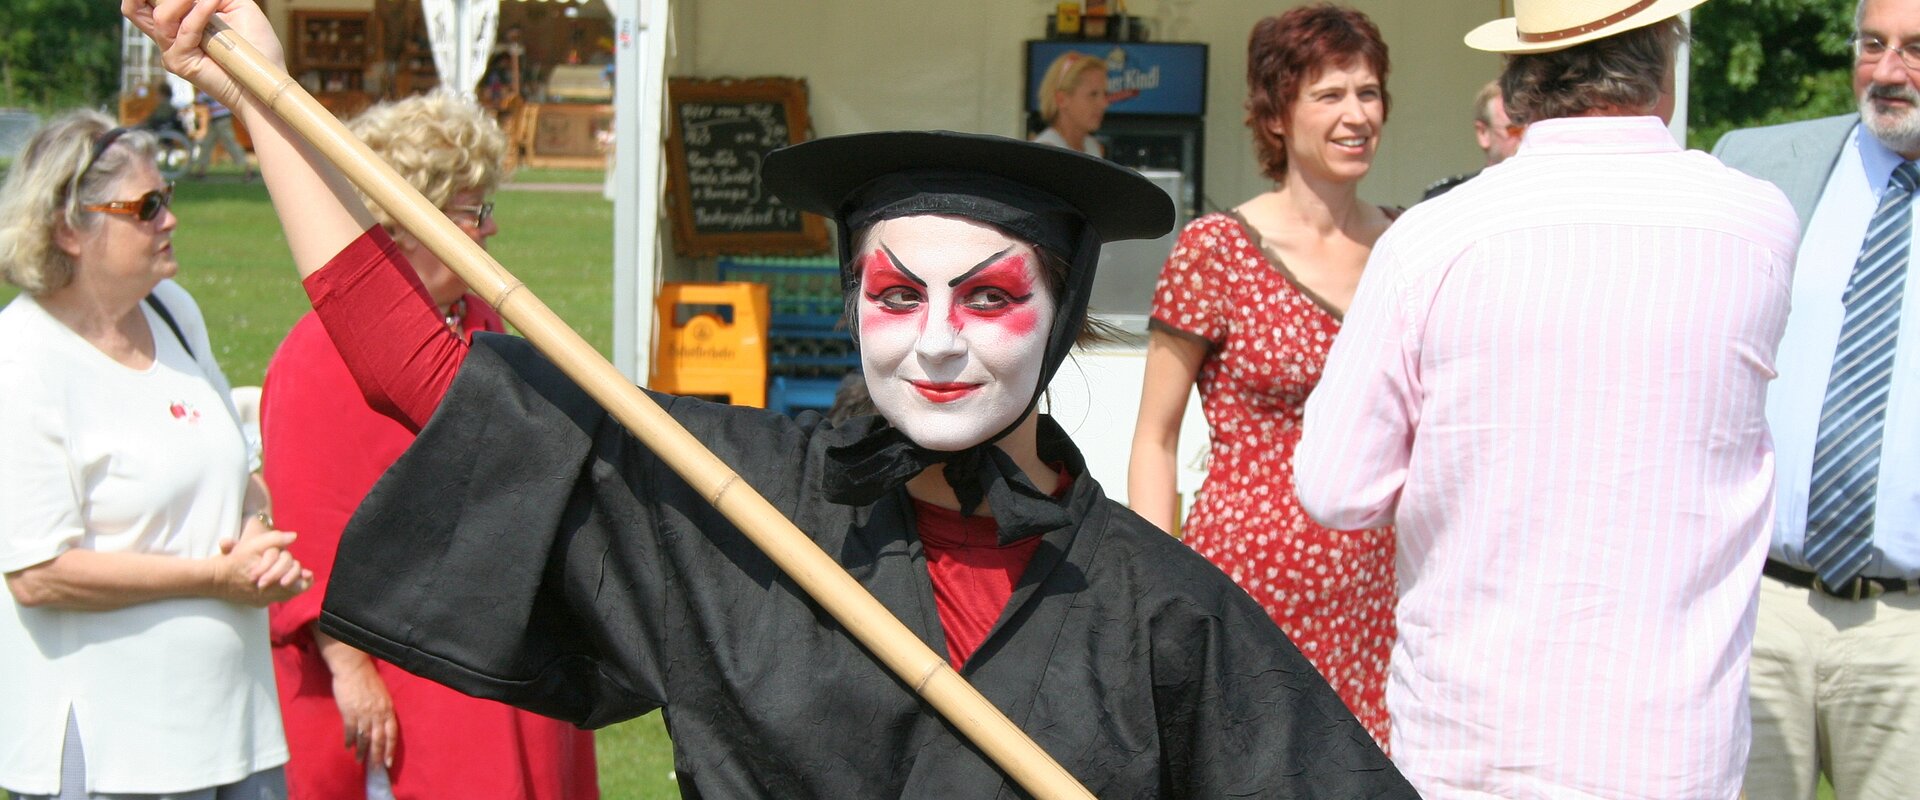 SchauspielerIN mit schwarzem Gewand, schwarzem Hut und weiß geschminktem Gesicht auf dem Kulturlustwandel in Bad Bevensen, im Hintergrund Festivalbesucher und einige Pagodenzelte